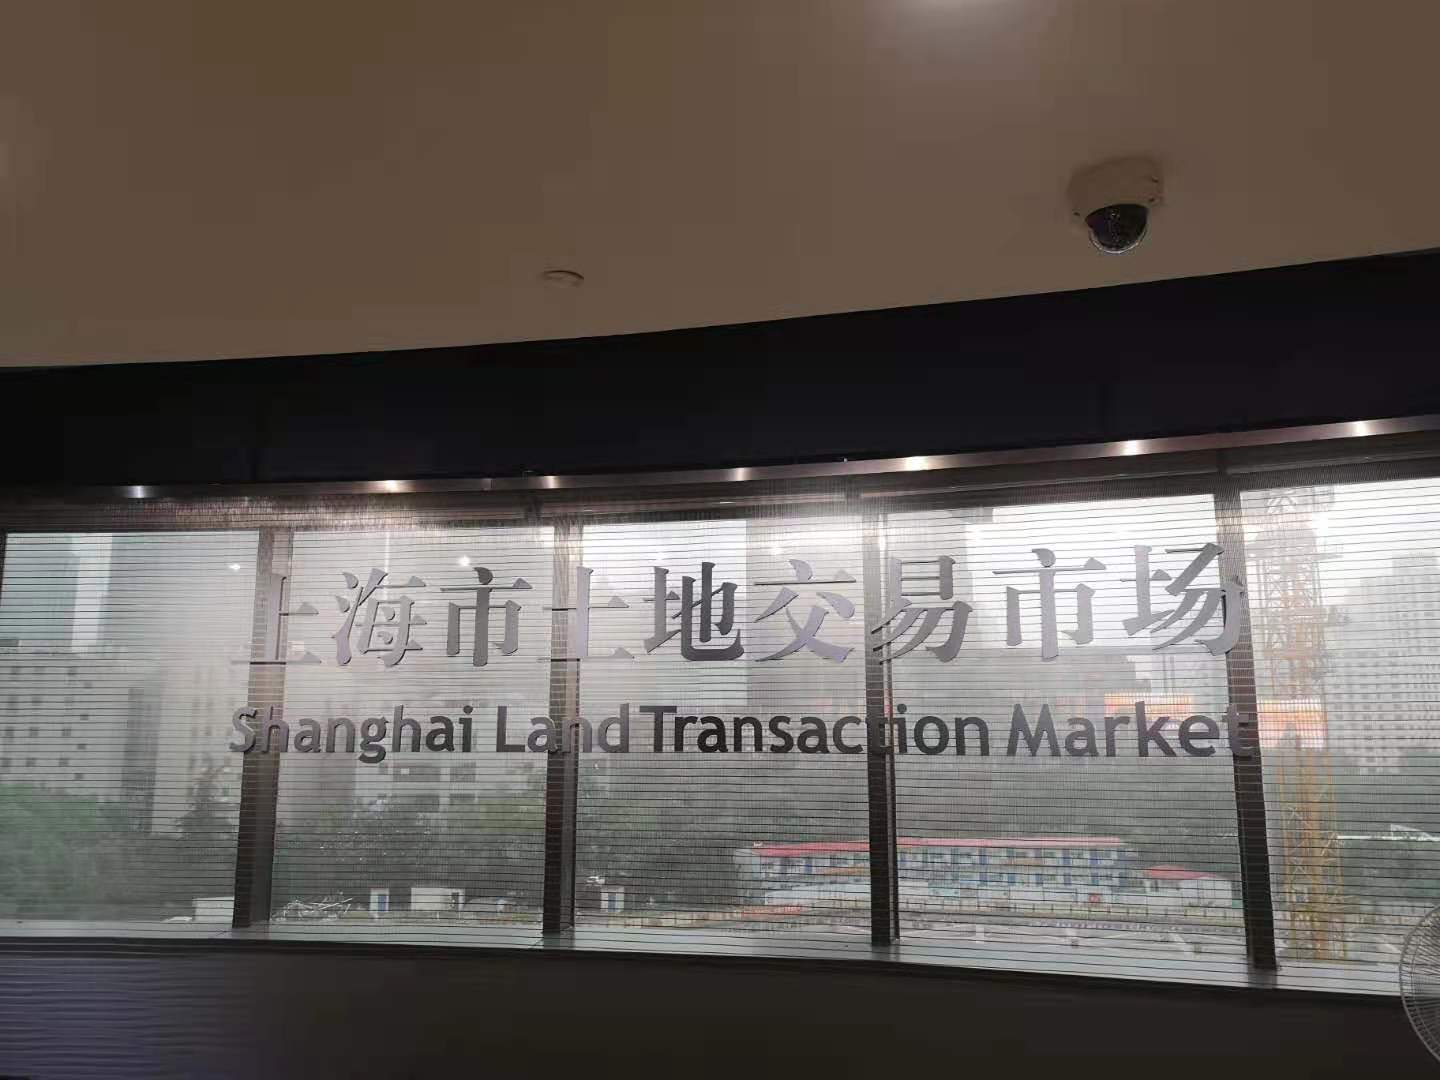 上海市土地交易市场